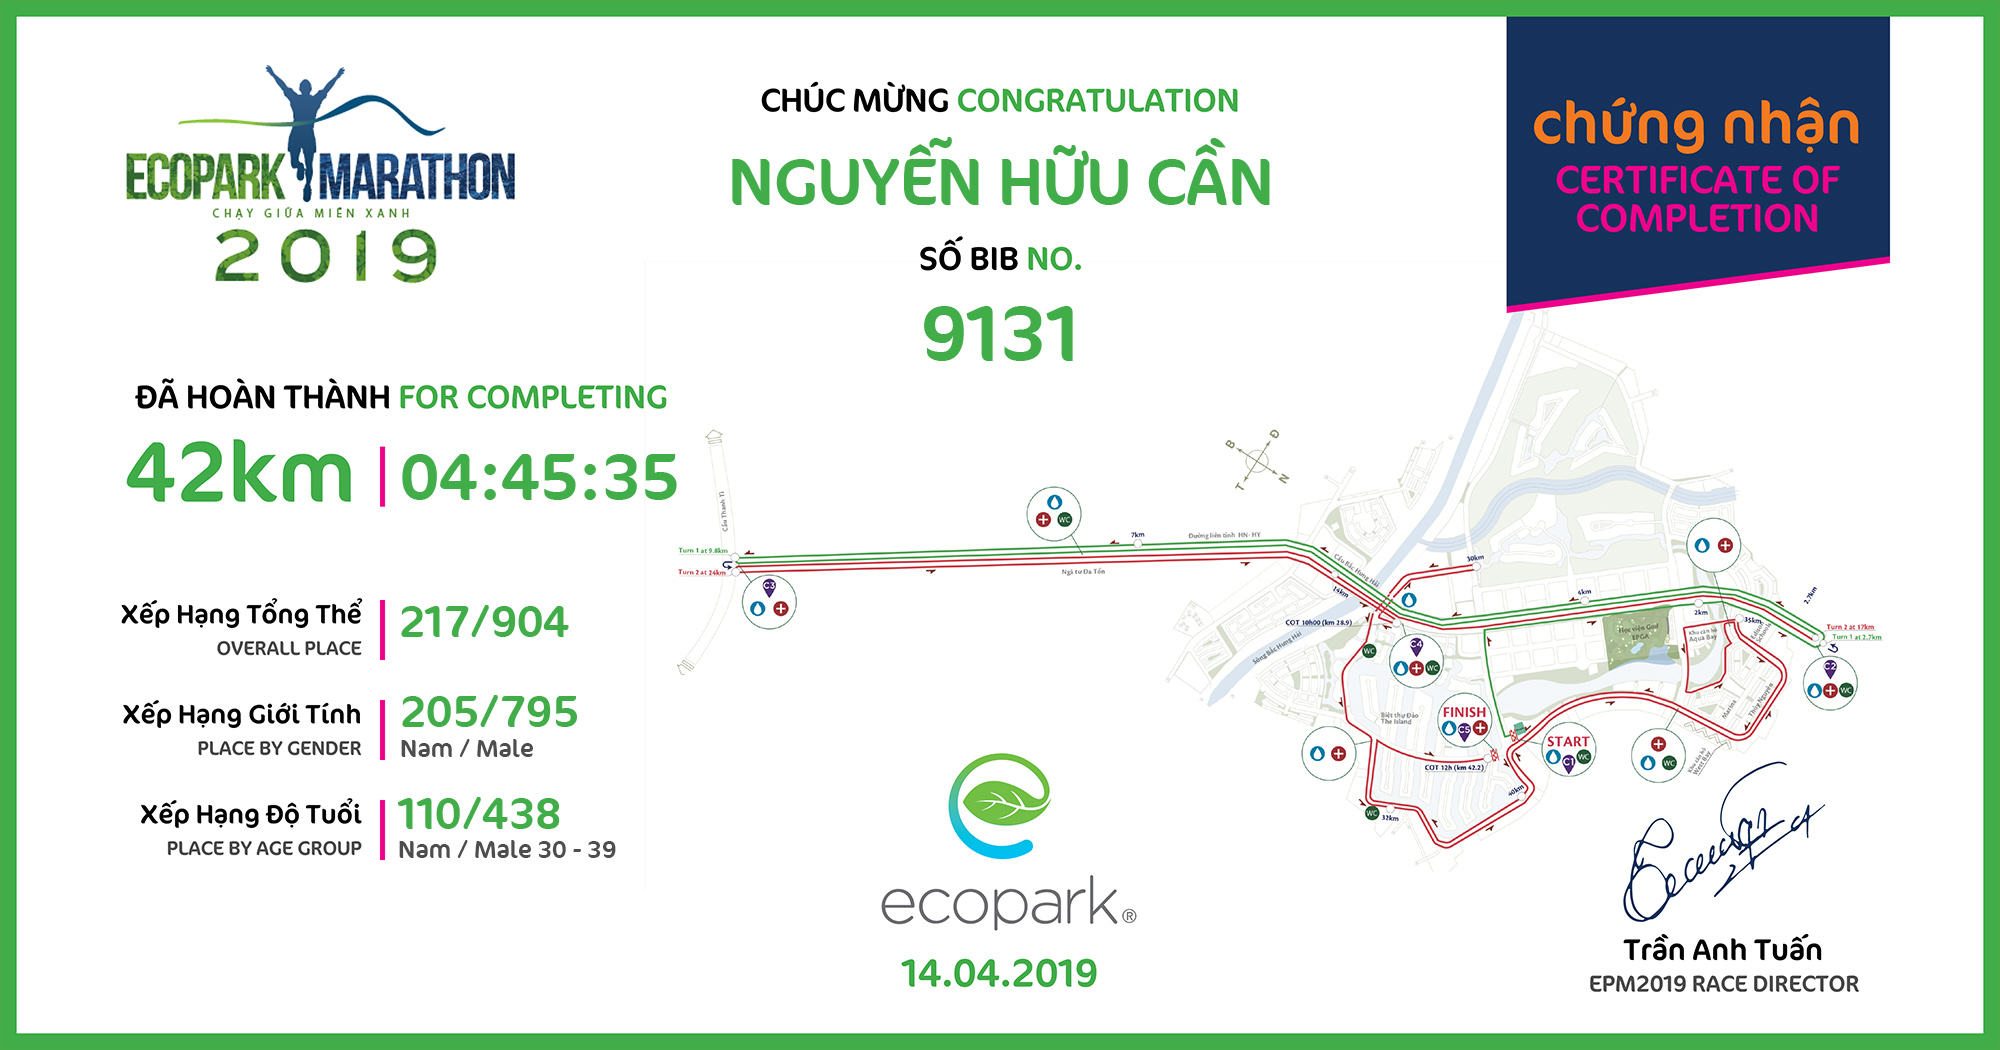 9131 - Nguyễn Hữu Cần